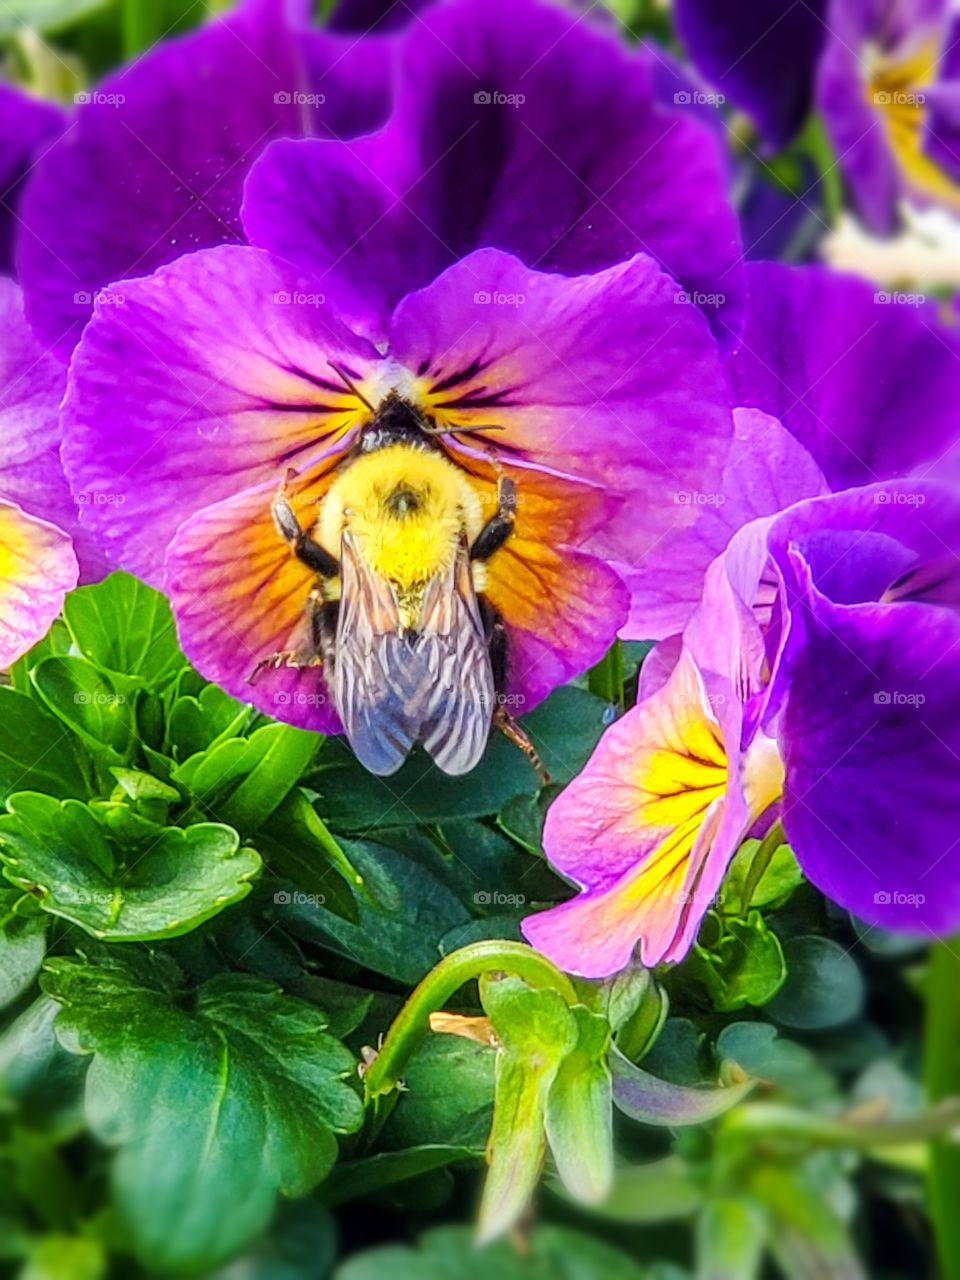 Fuzzy bumblebee loving on a purple flower in the garden.